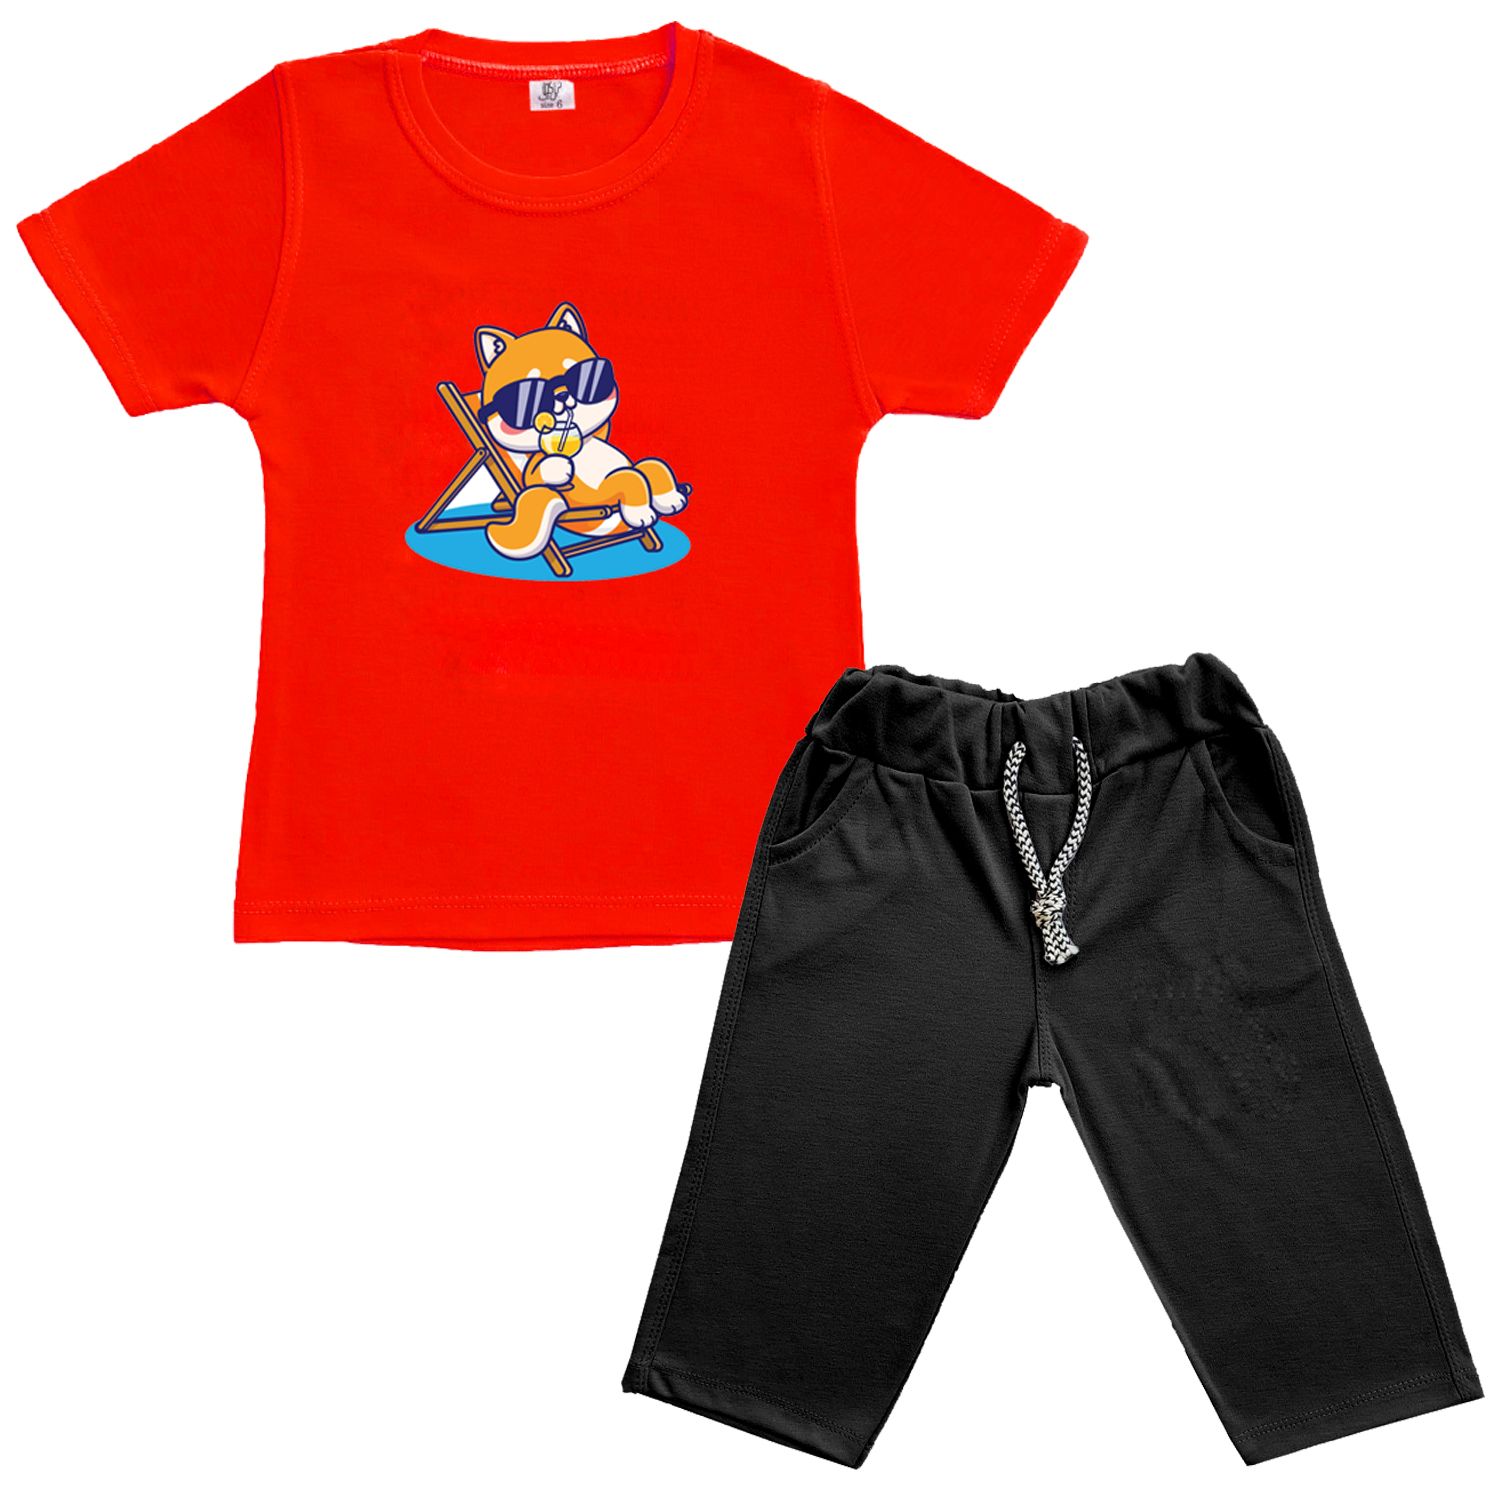 ست تی شرت و شلوارک نوزادی نیل کوک مدل Summerfun 802